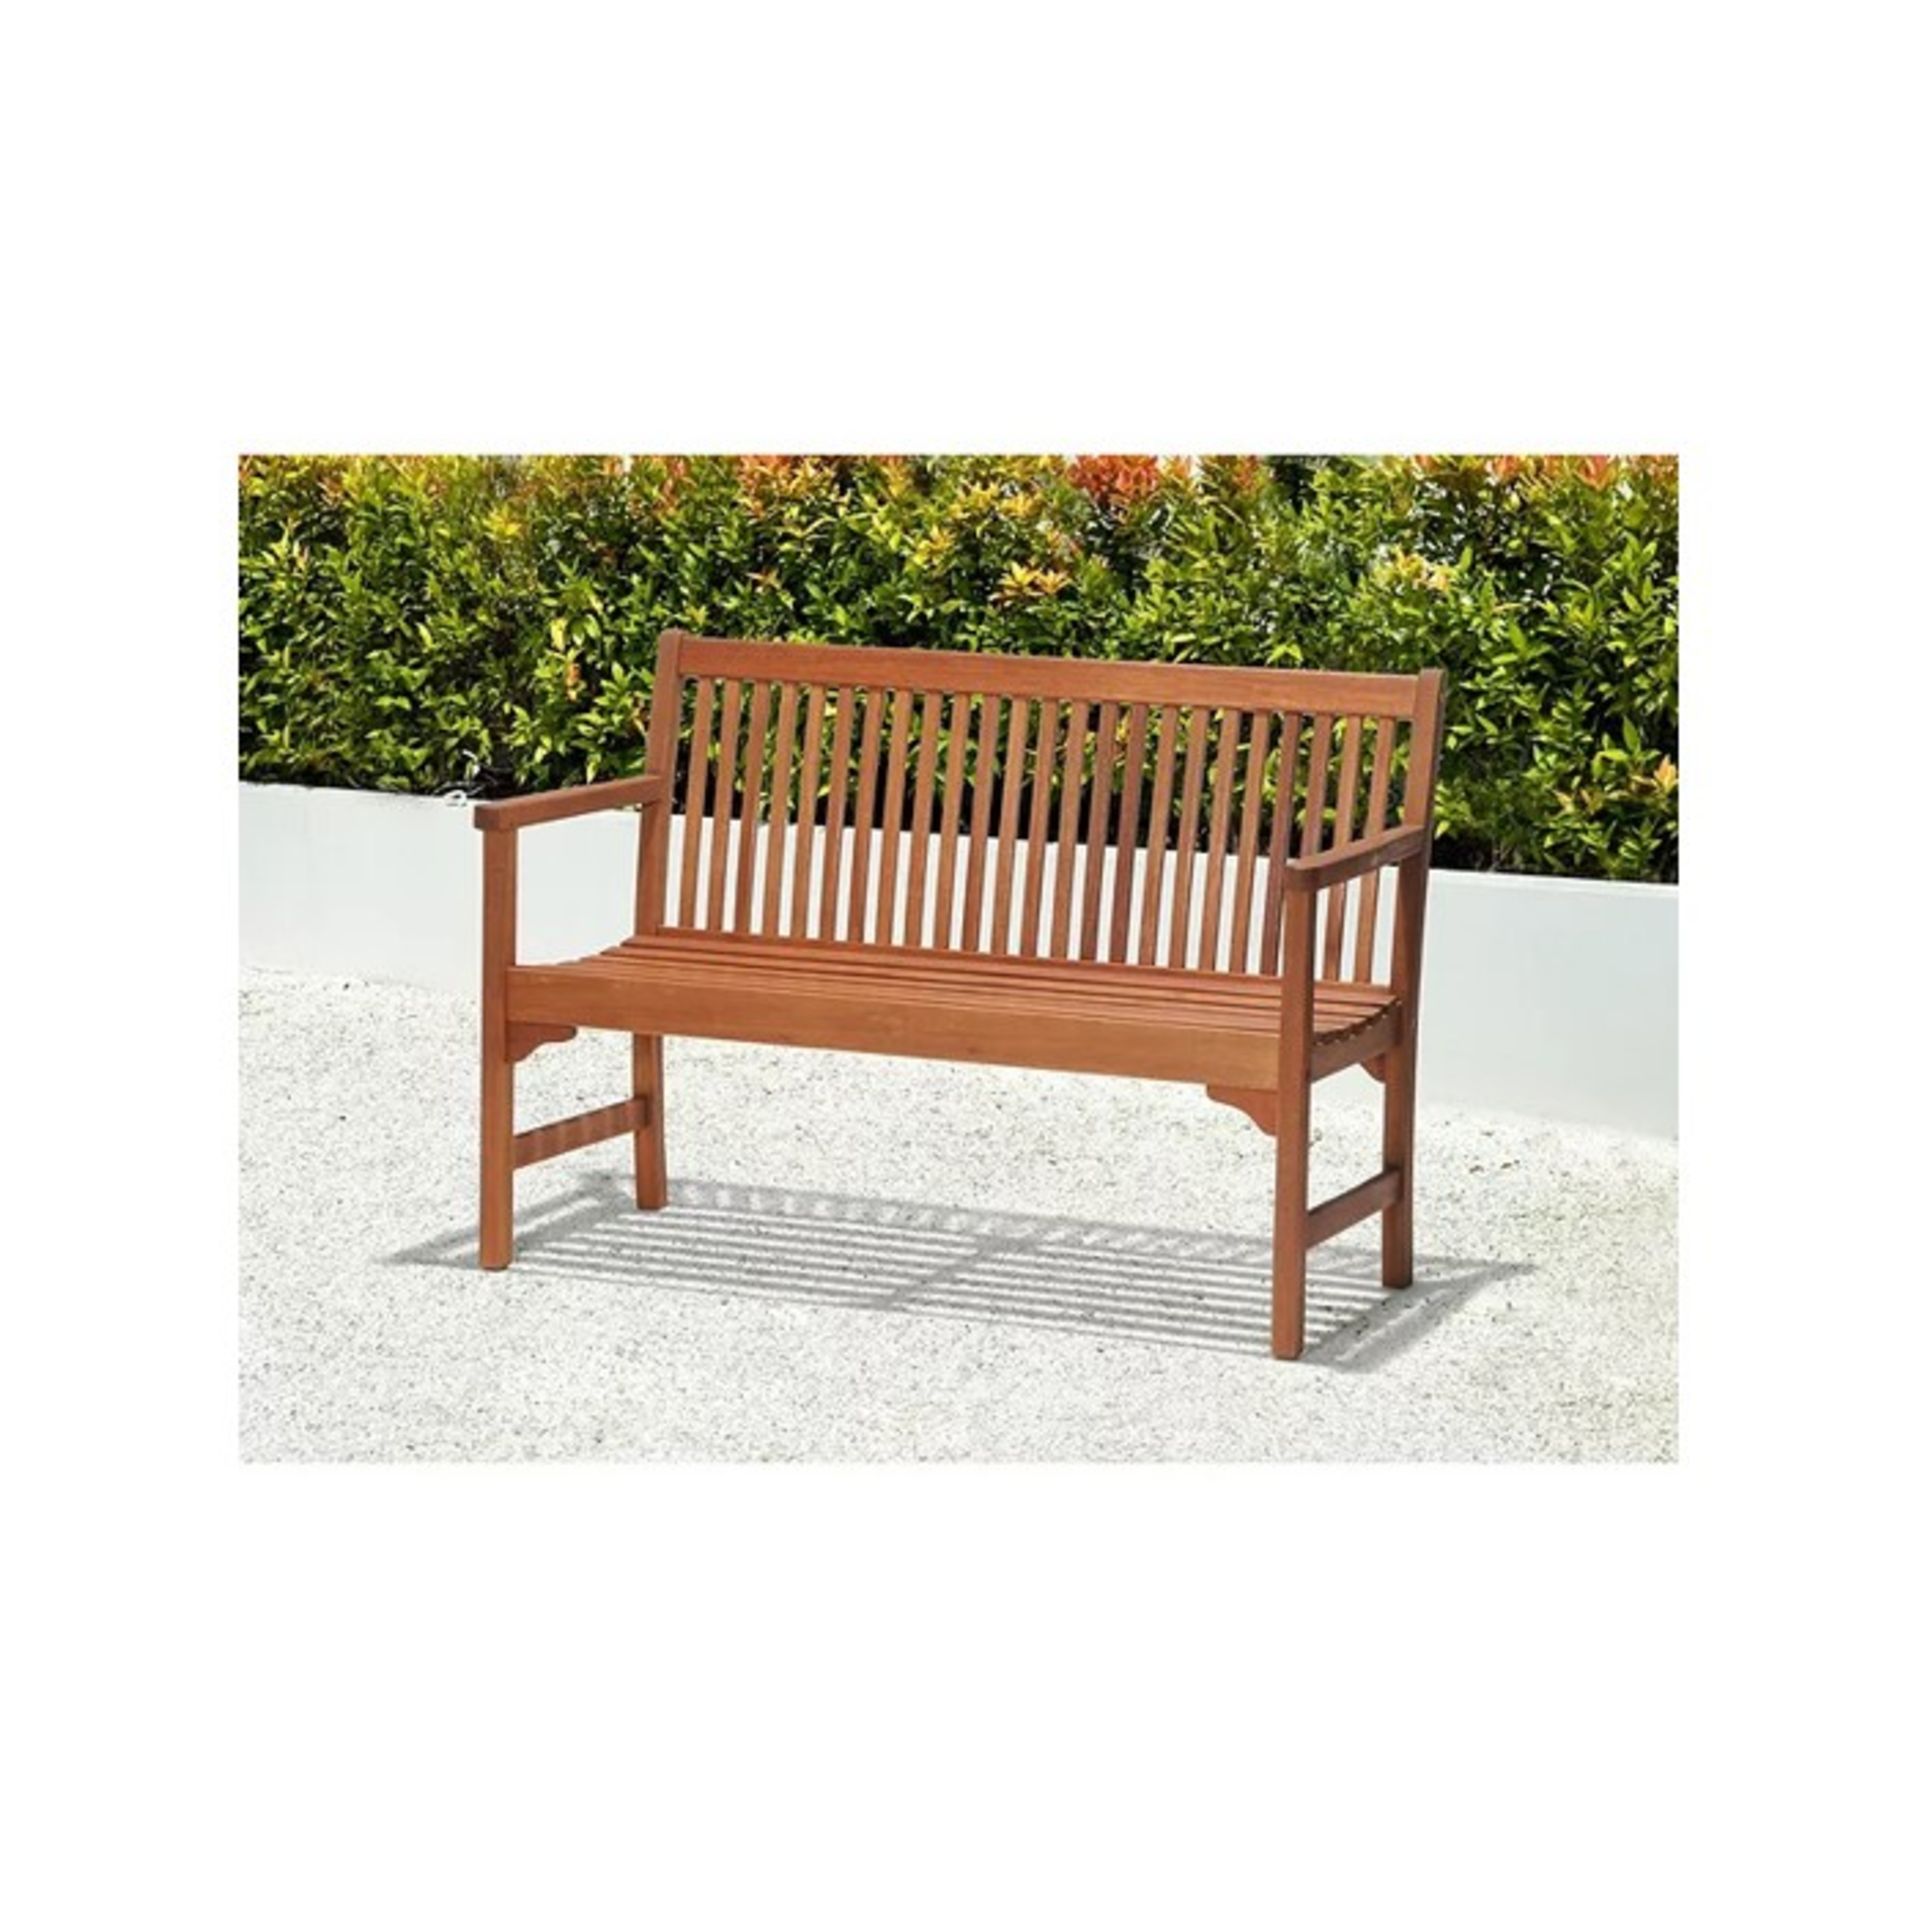 5 X BRAND NEW JOHN LEWIS 2-Seater Garden Bench, FSC-Certified (Eucalyptus Wood), Natural. RRP £253. - Bild 2 aus 4